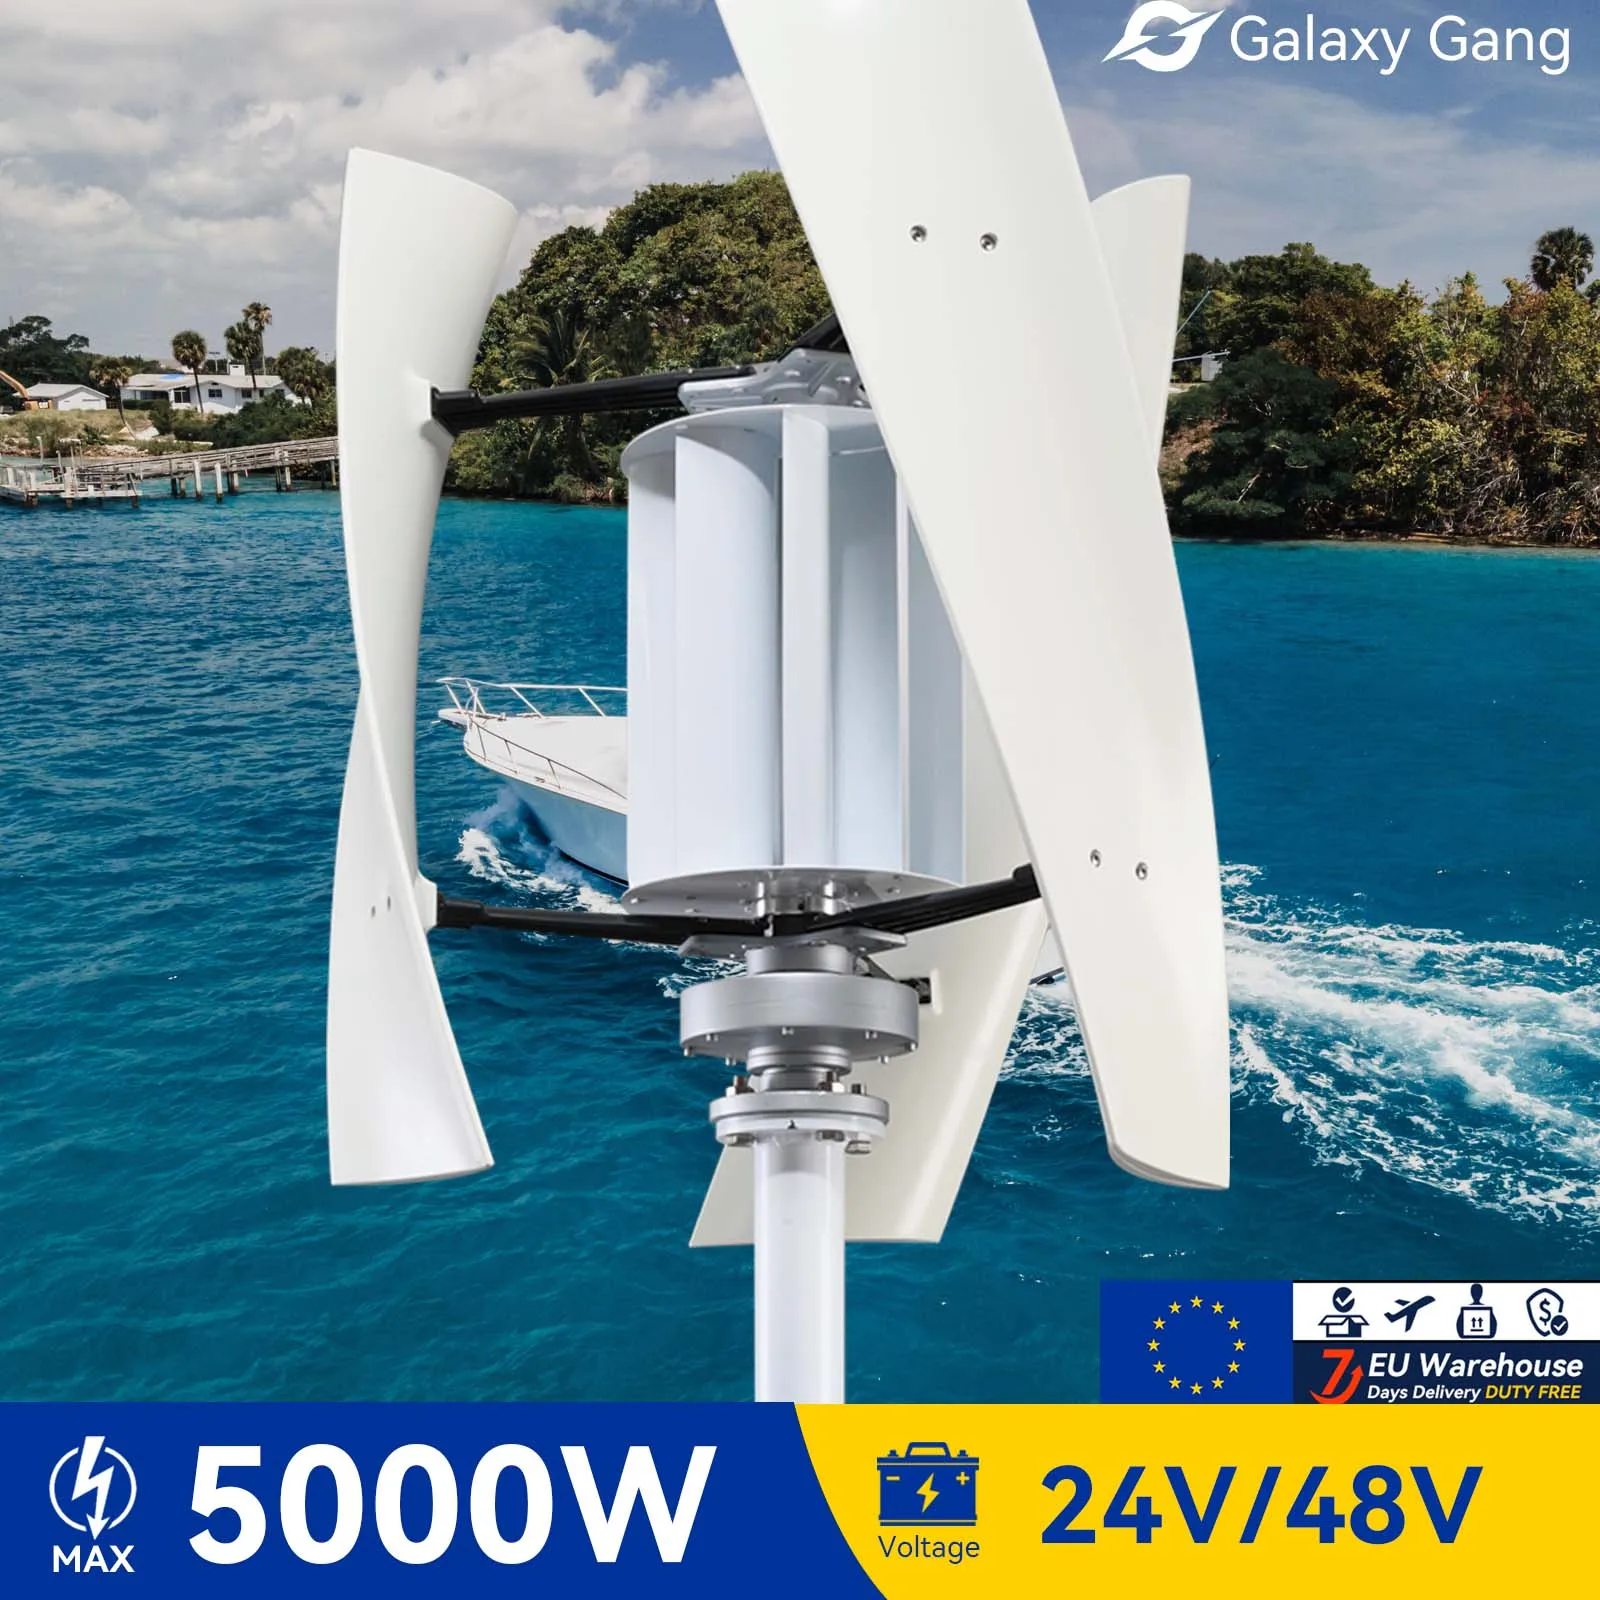 

Ветряная Турбина галактики Gang 5 кВт 5000 Вт с вертикальной осью maglevв, генератор высокого напряжения 24 В 48 В с гибридным контроллером заряда GGX5